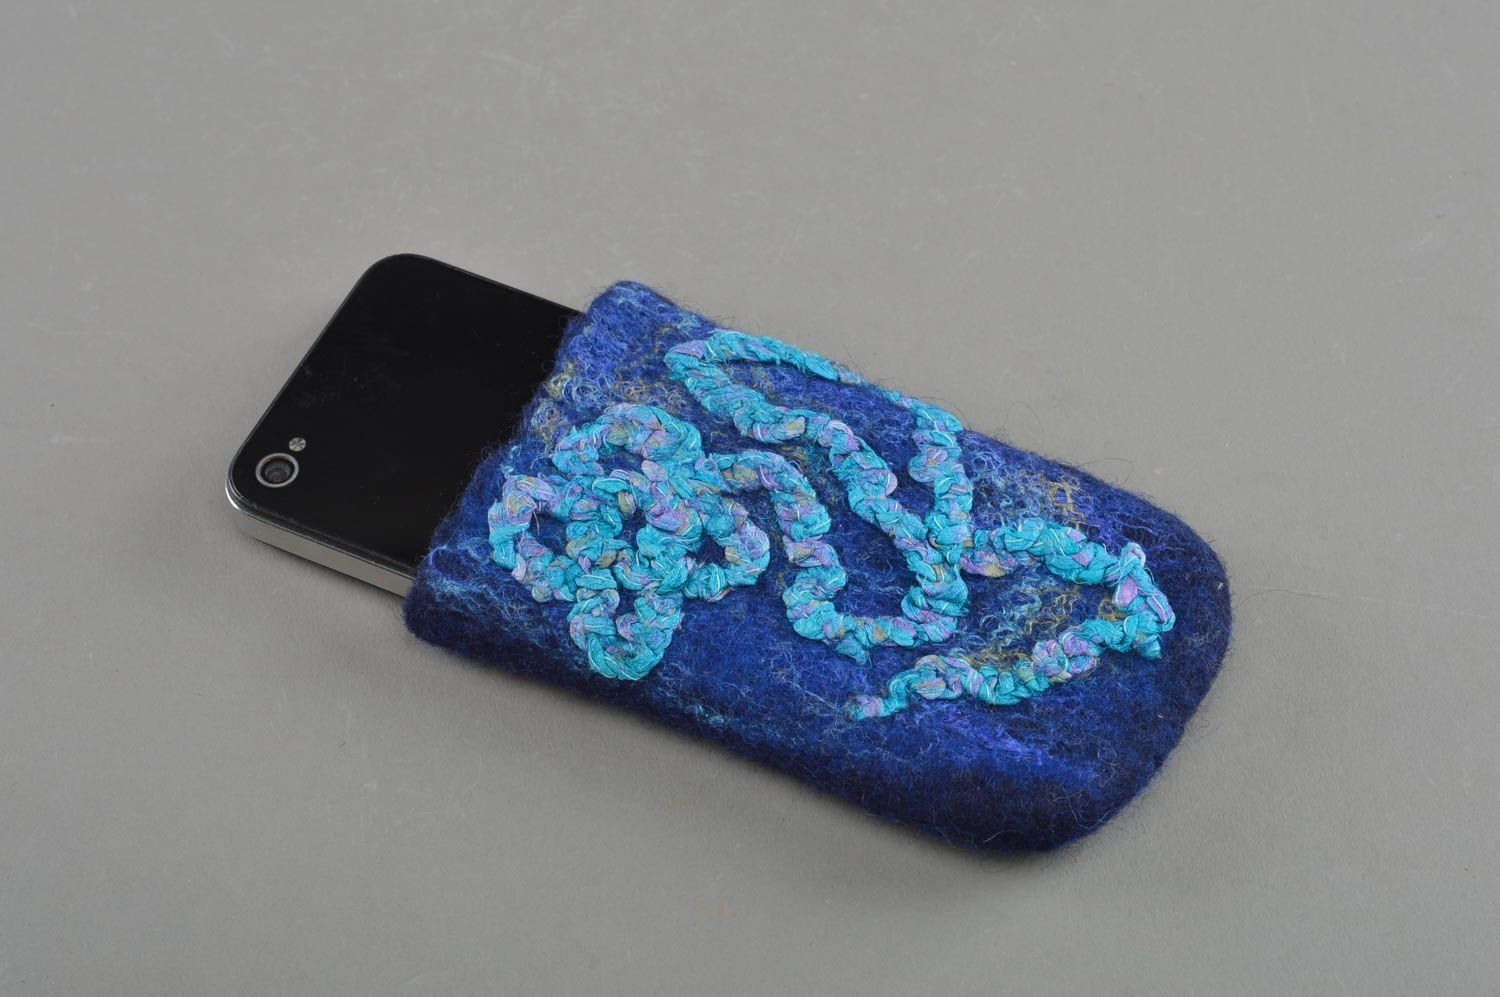 Чехол для телефона из шерсти голубой с узорами красивый небольшой ручная работа фото 1